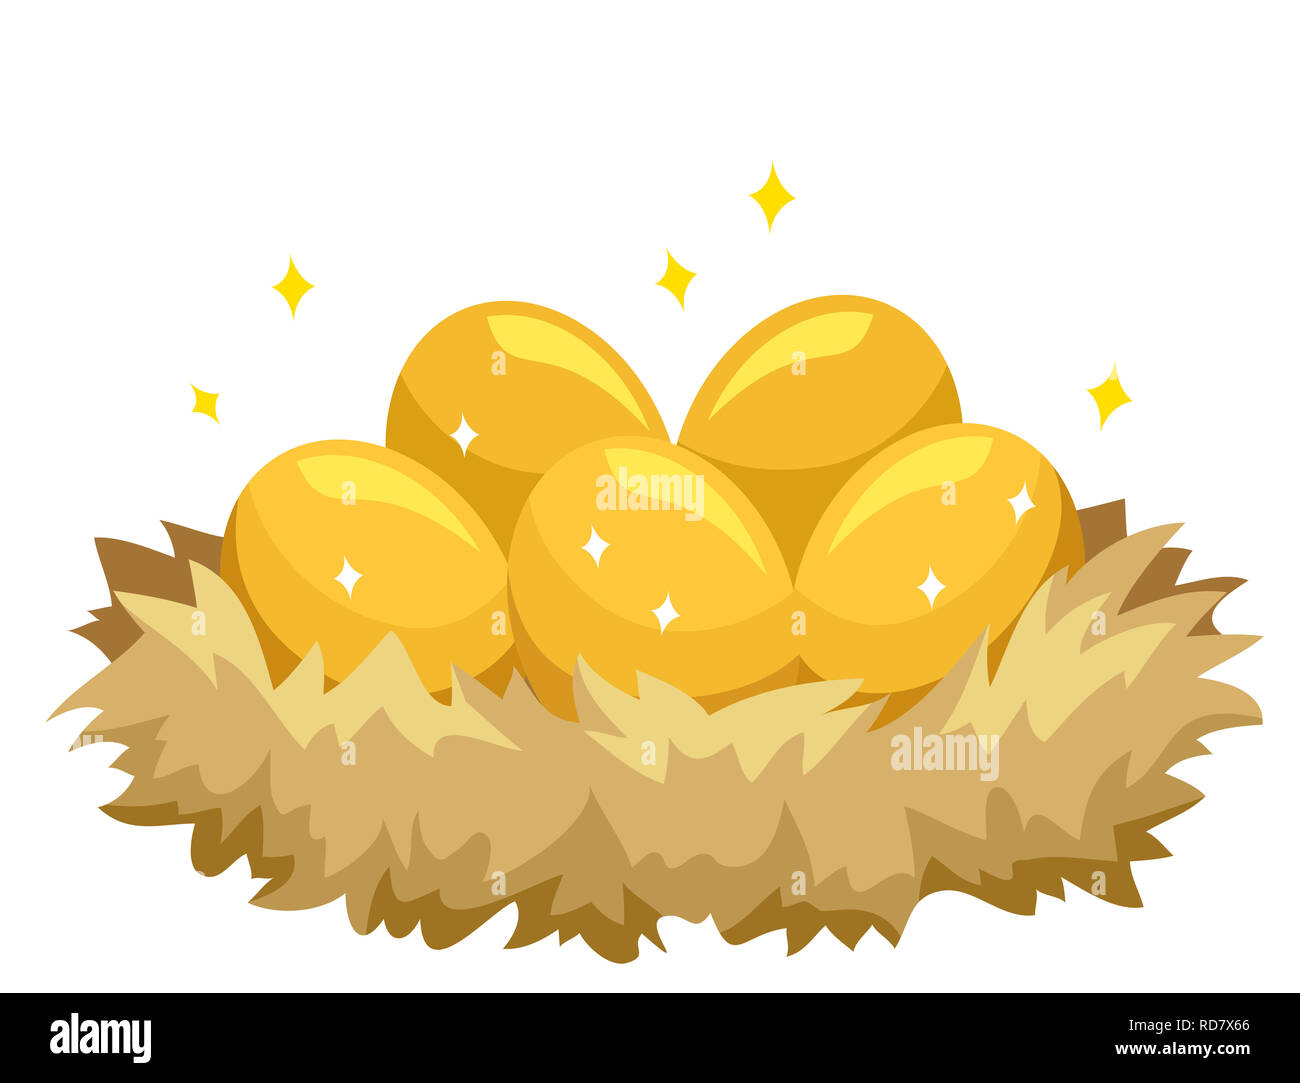 Golden Egg Clipart - Stunning Images of Golden Eggs